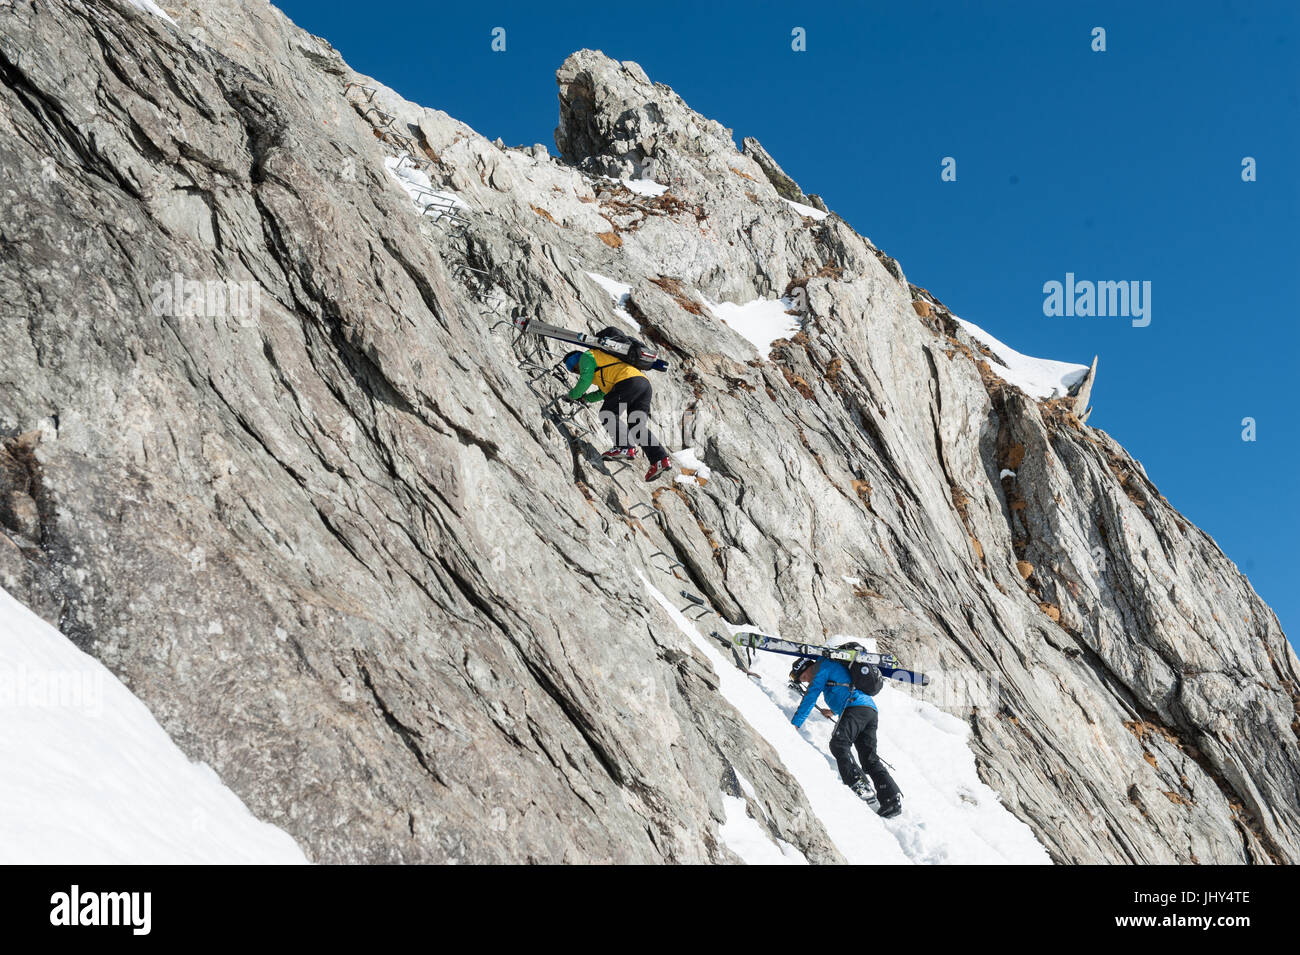 Skitour in den Bergen der Region Disentis in der Schweiz. Die Skier sind auf die Rucksäcke für den Aufstieg über eine steile Felswand montiert. Stockfoto